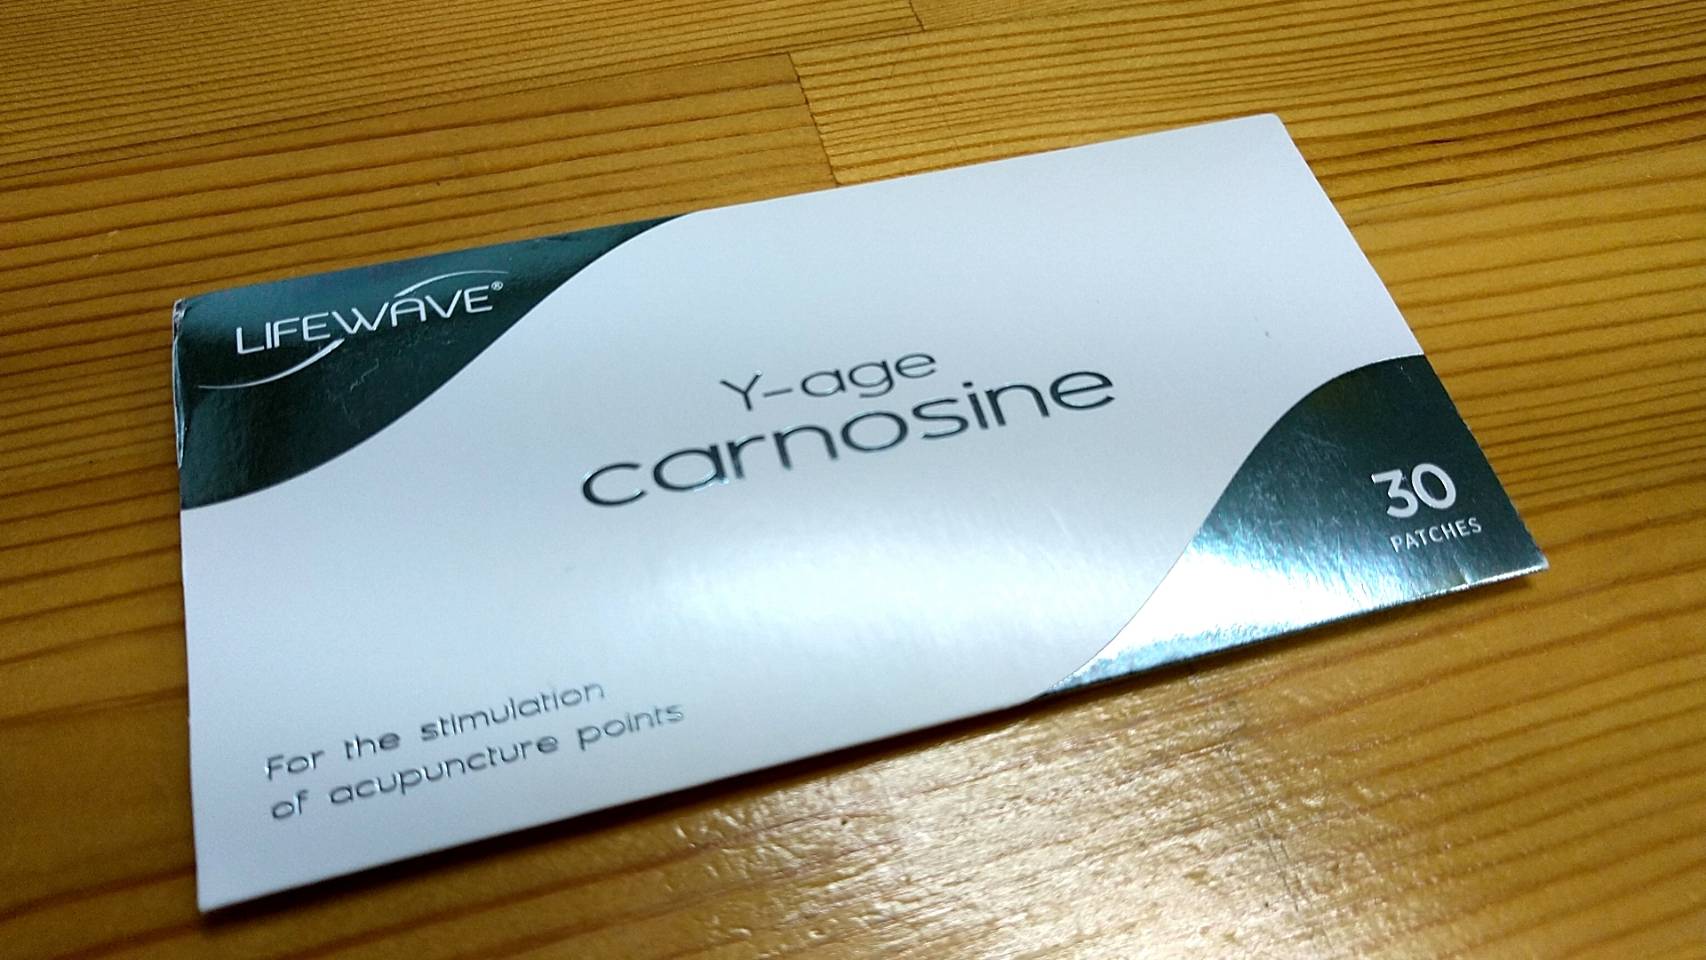 ライフウェーブ lifewave カルノシン carnosine パッチ - 健康用品